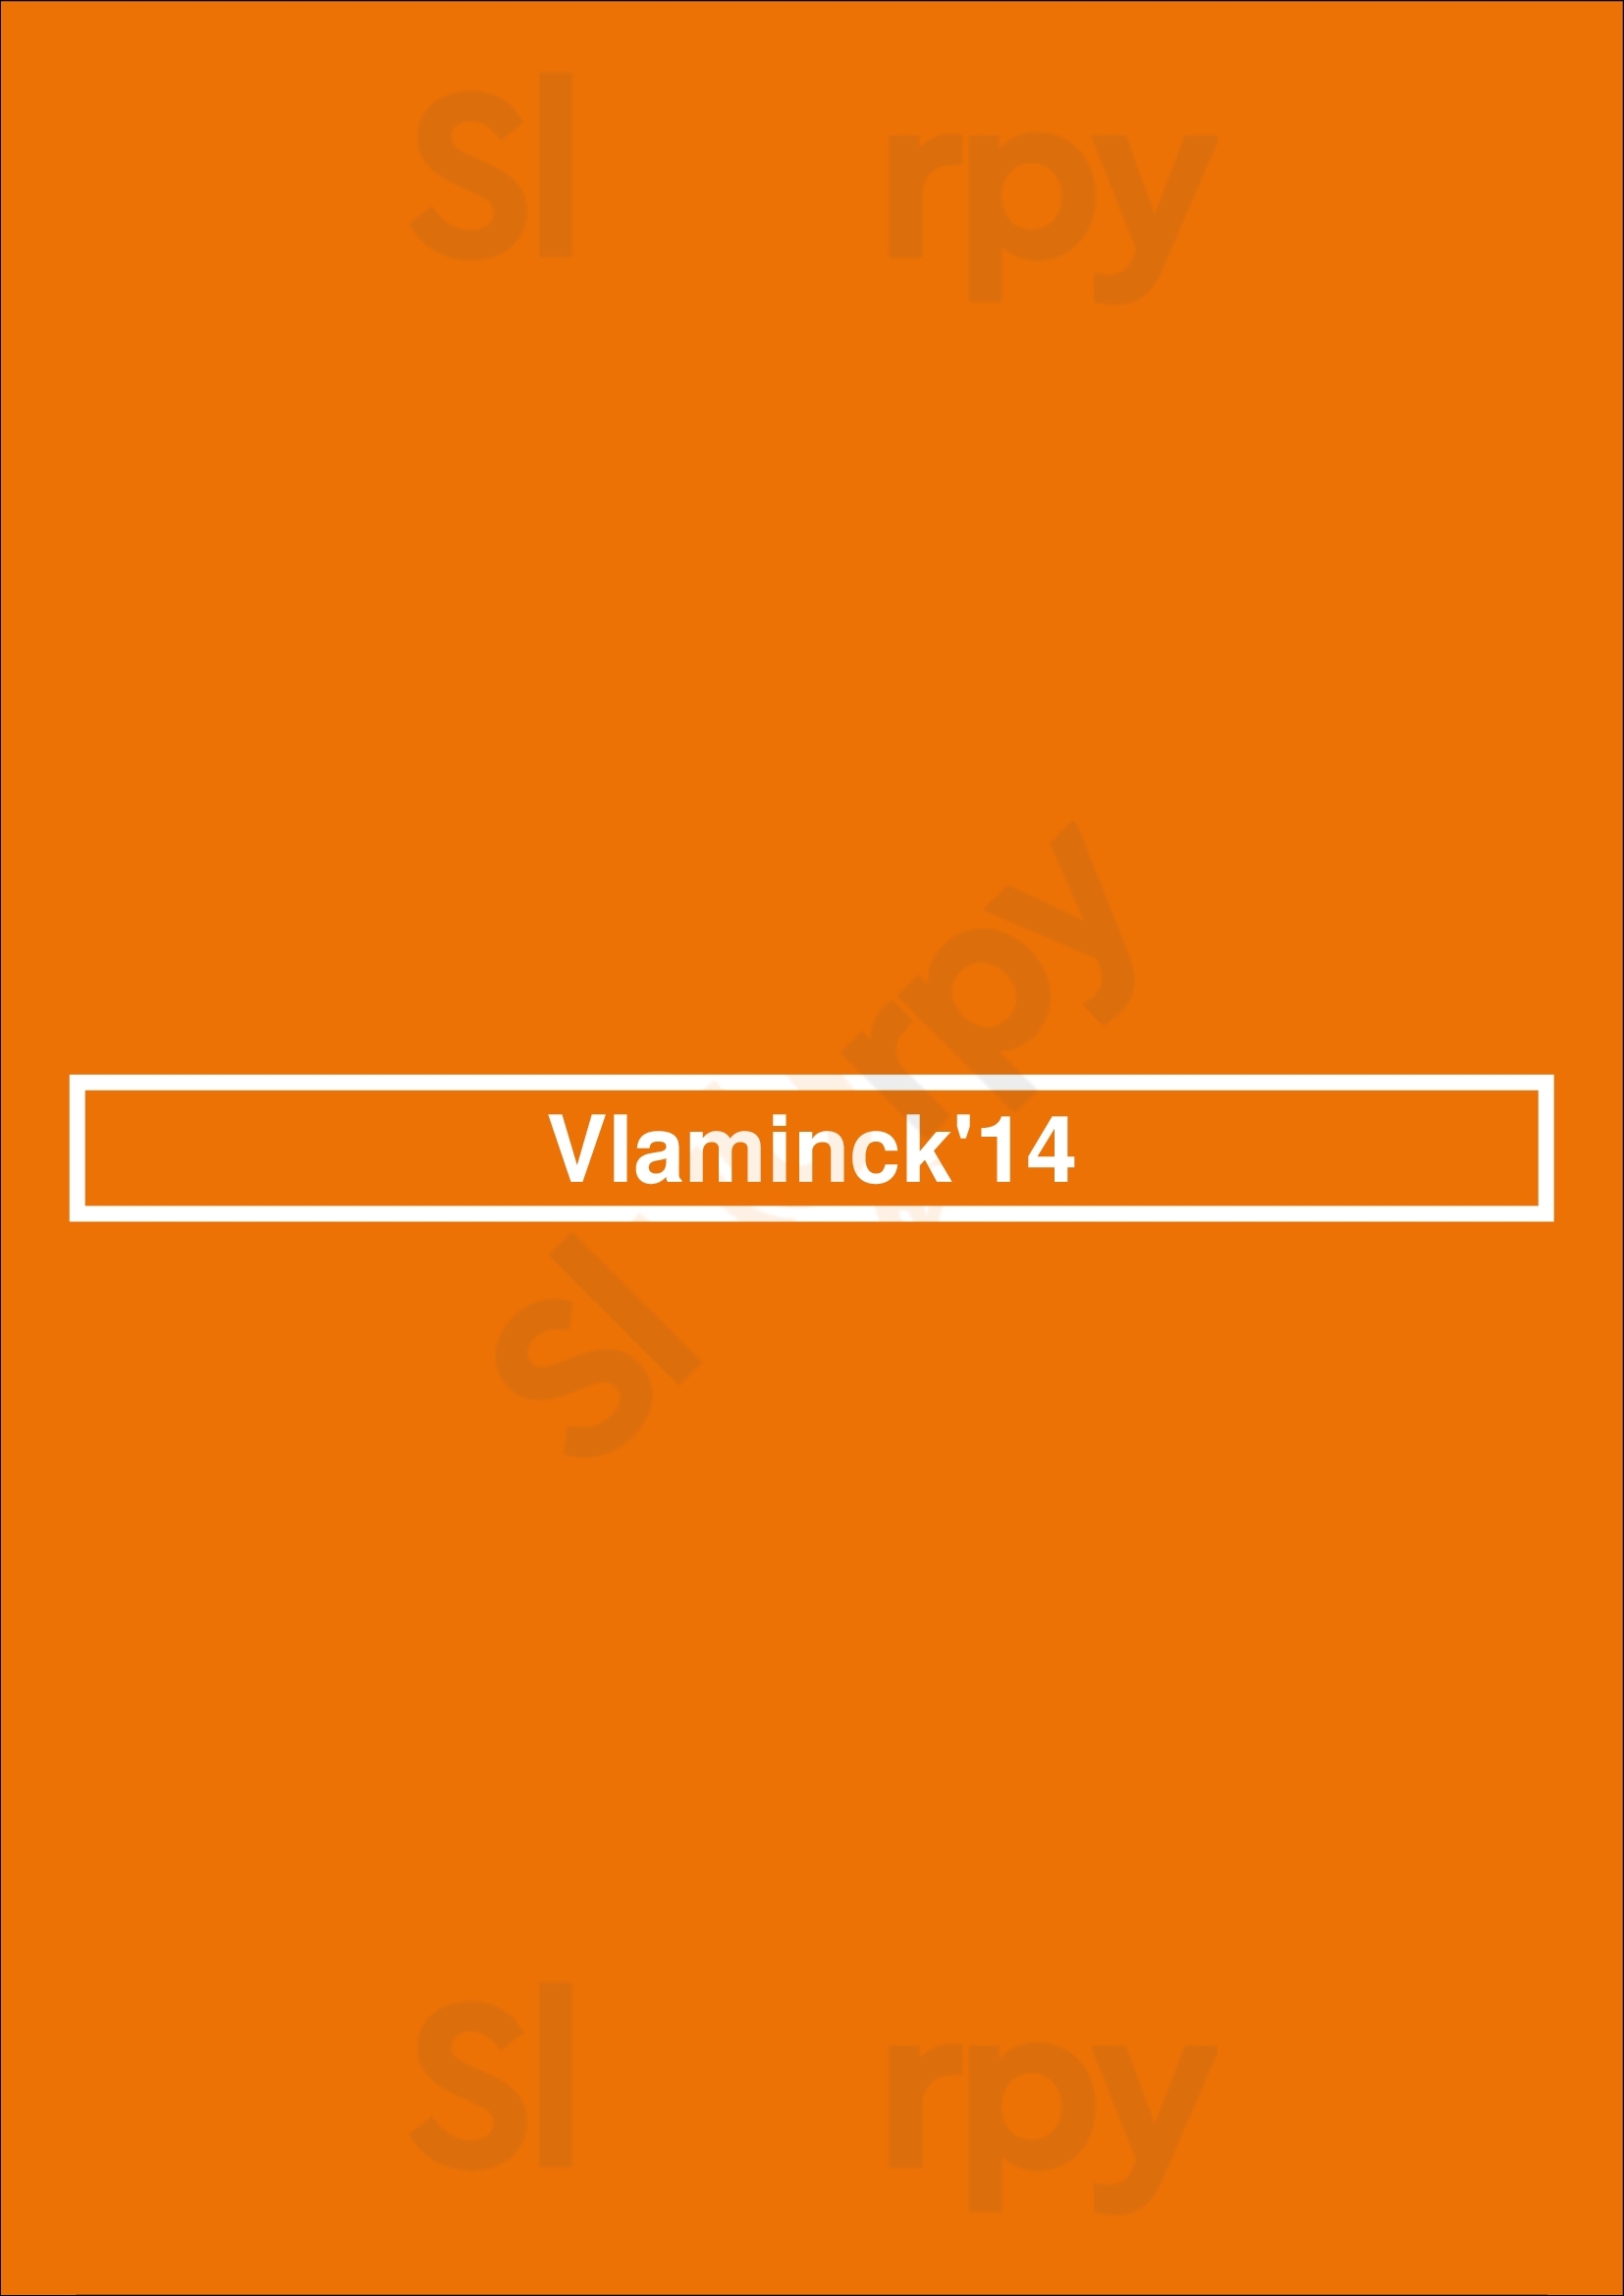 Vlaminck'14 Bruges Menu - 1